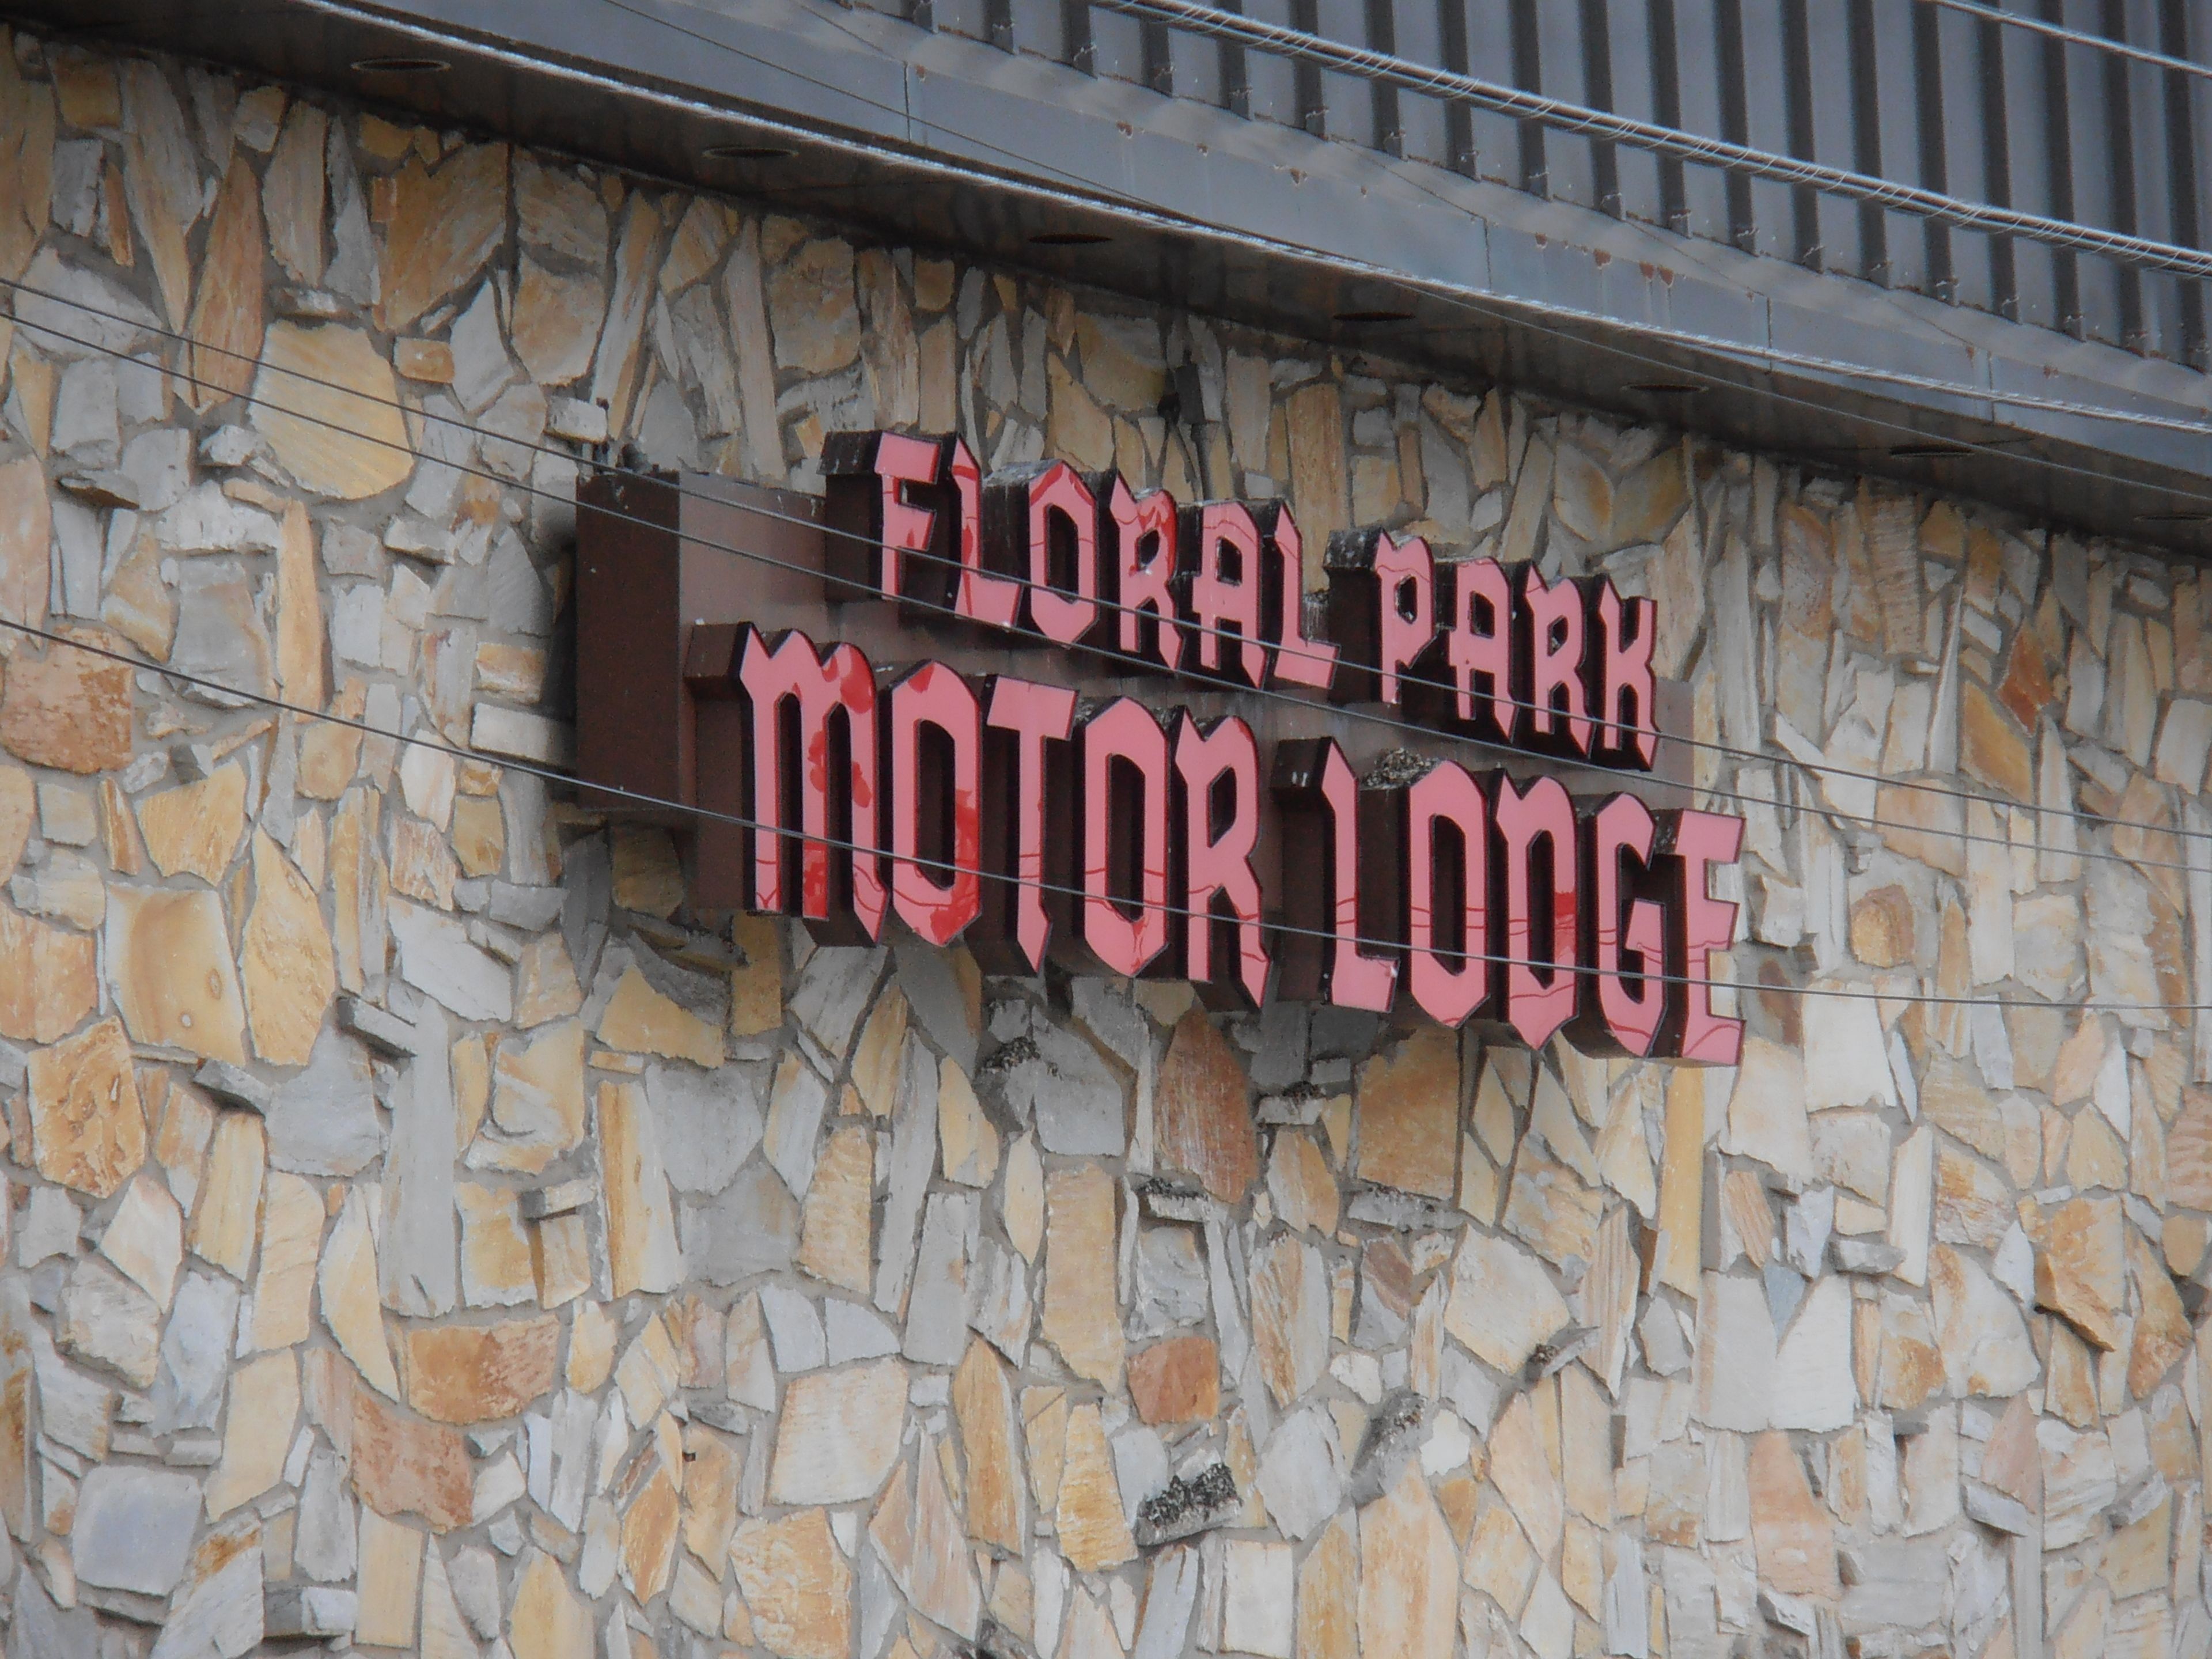 Floral Park Motor Lodge